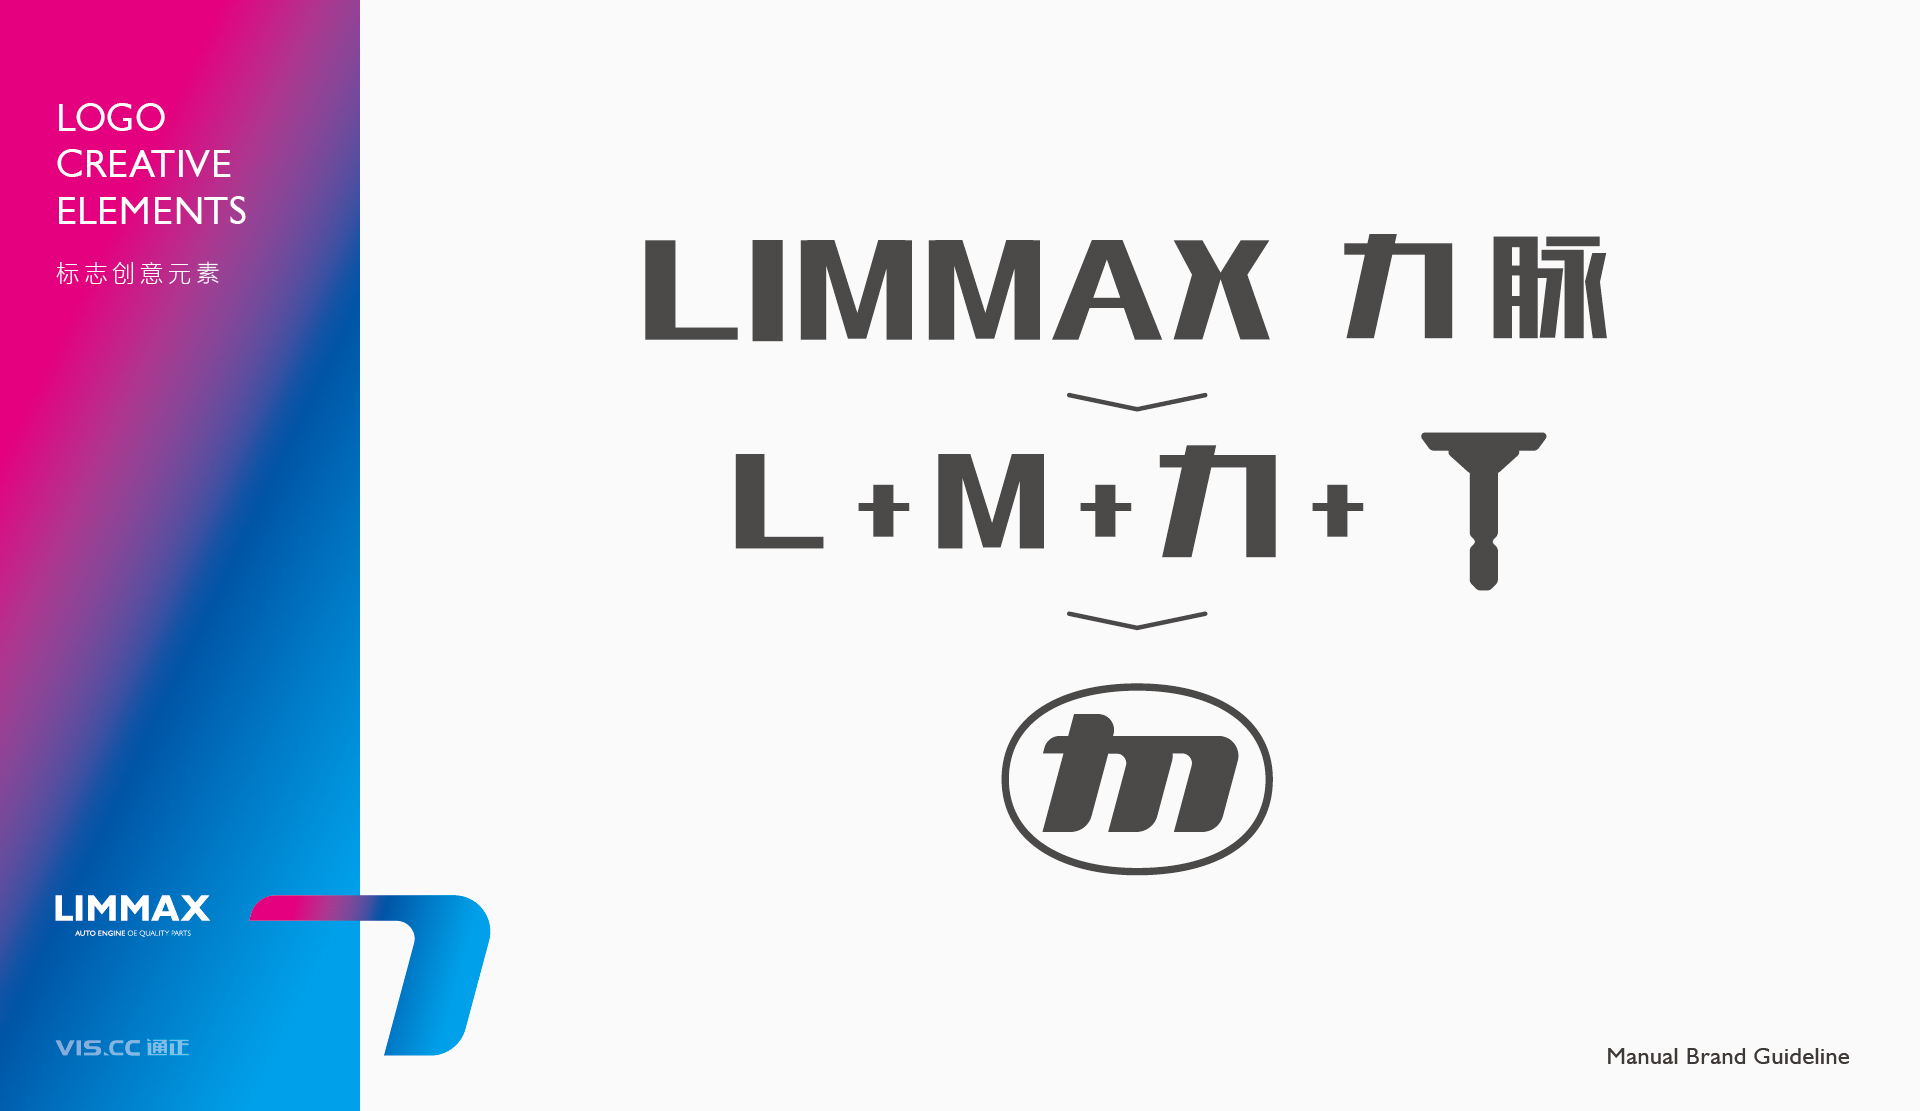 Limmax力脉汽配品牌LOGO_VI设计 20230902 通正设计提供-04